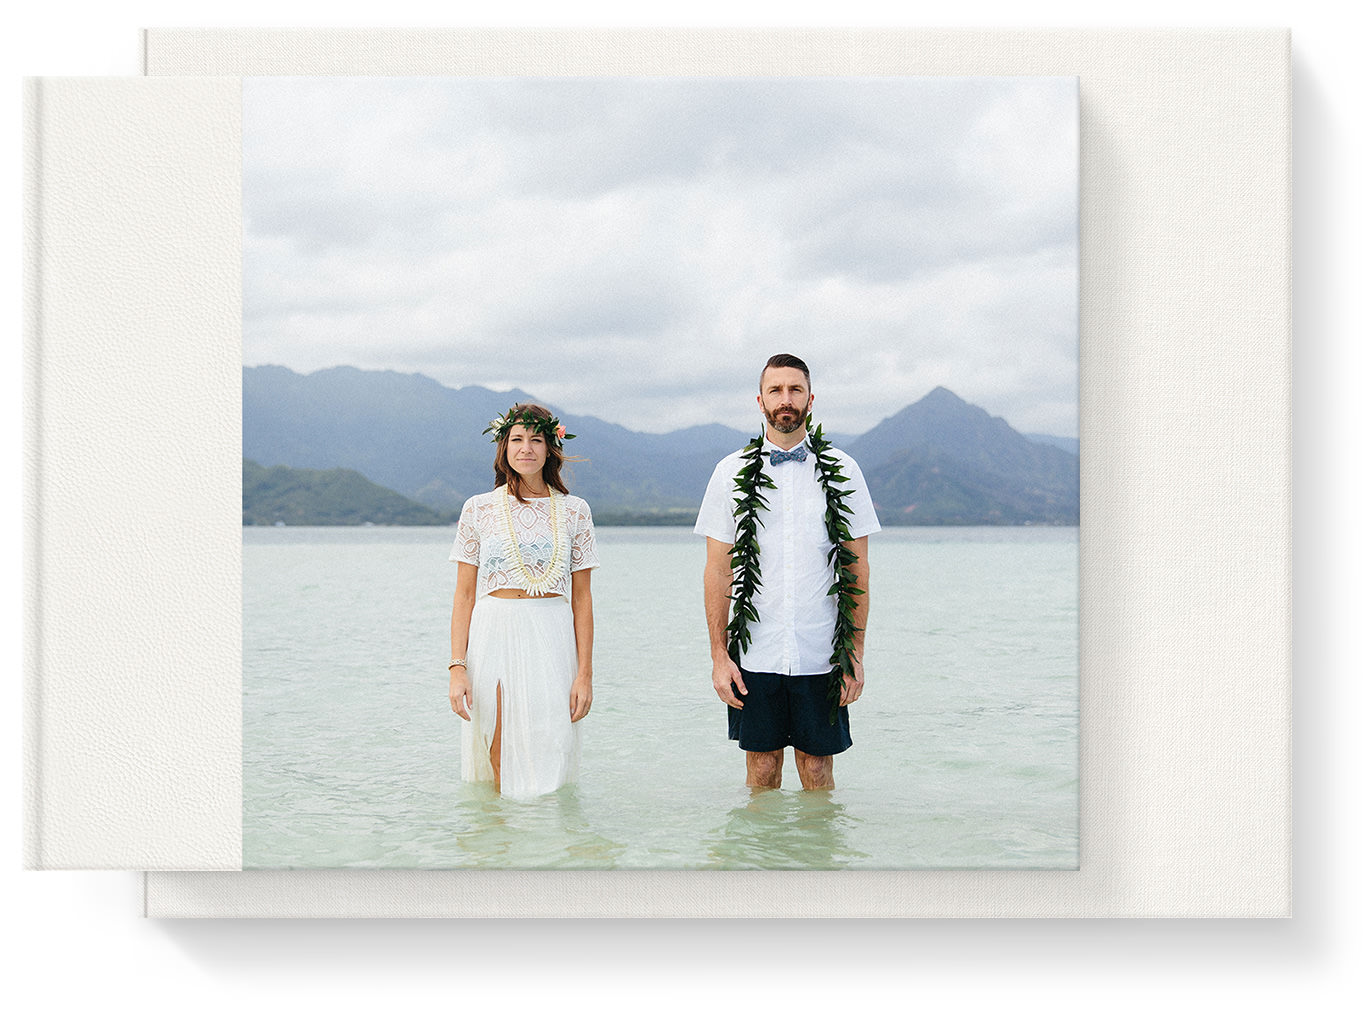 Premium-Hochzeitsfotoalbum aus Leder im Querformat in Präsentationsbox mit Titelbild eines Brautpaares, das im Wasser steht.